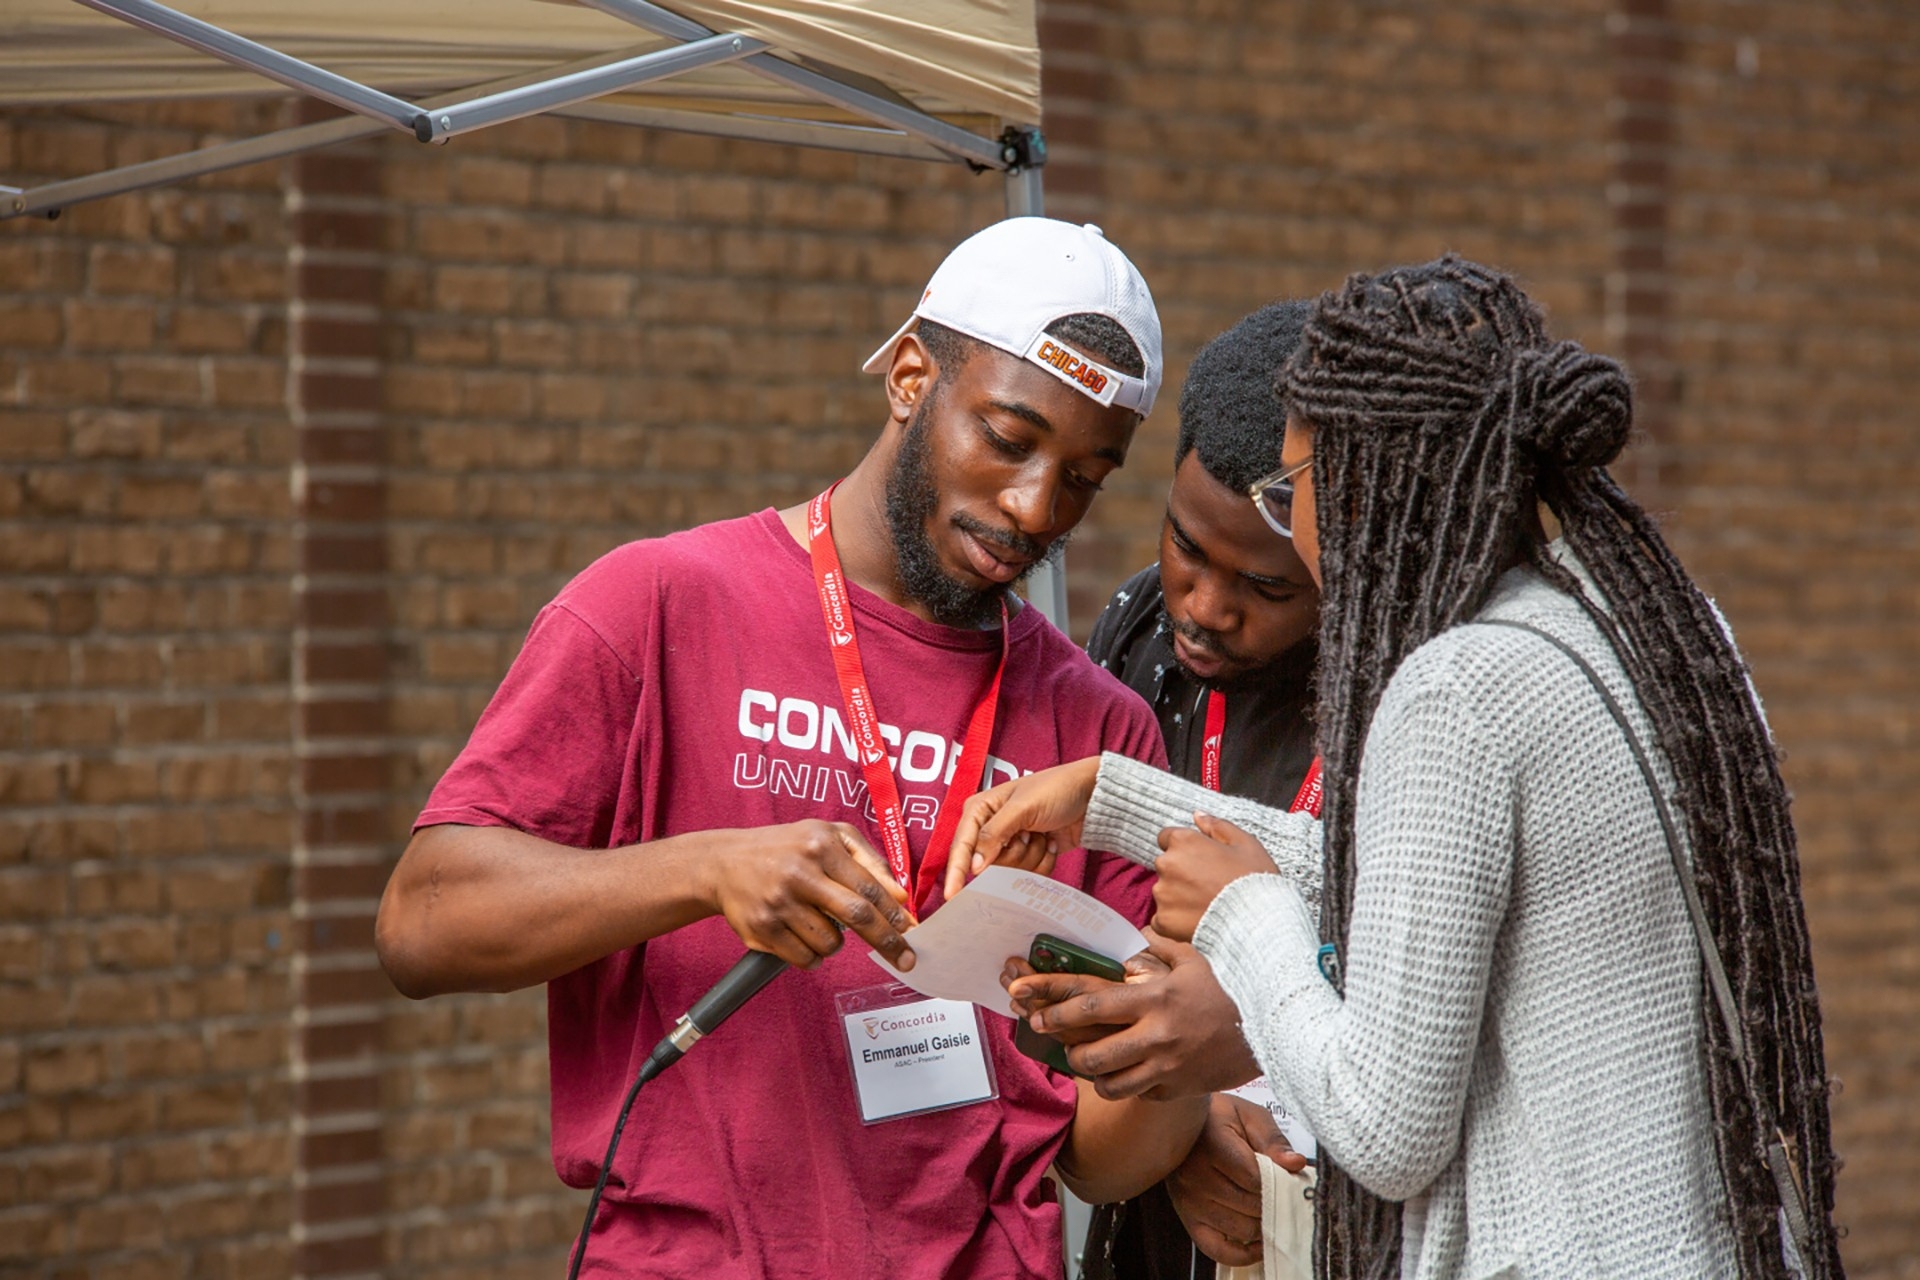 Des étudiants noirs en discussion lors d'un événement universitaire.